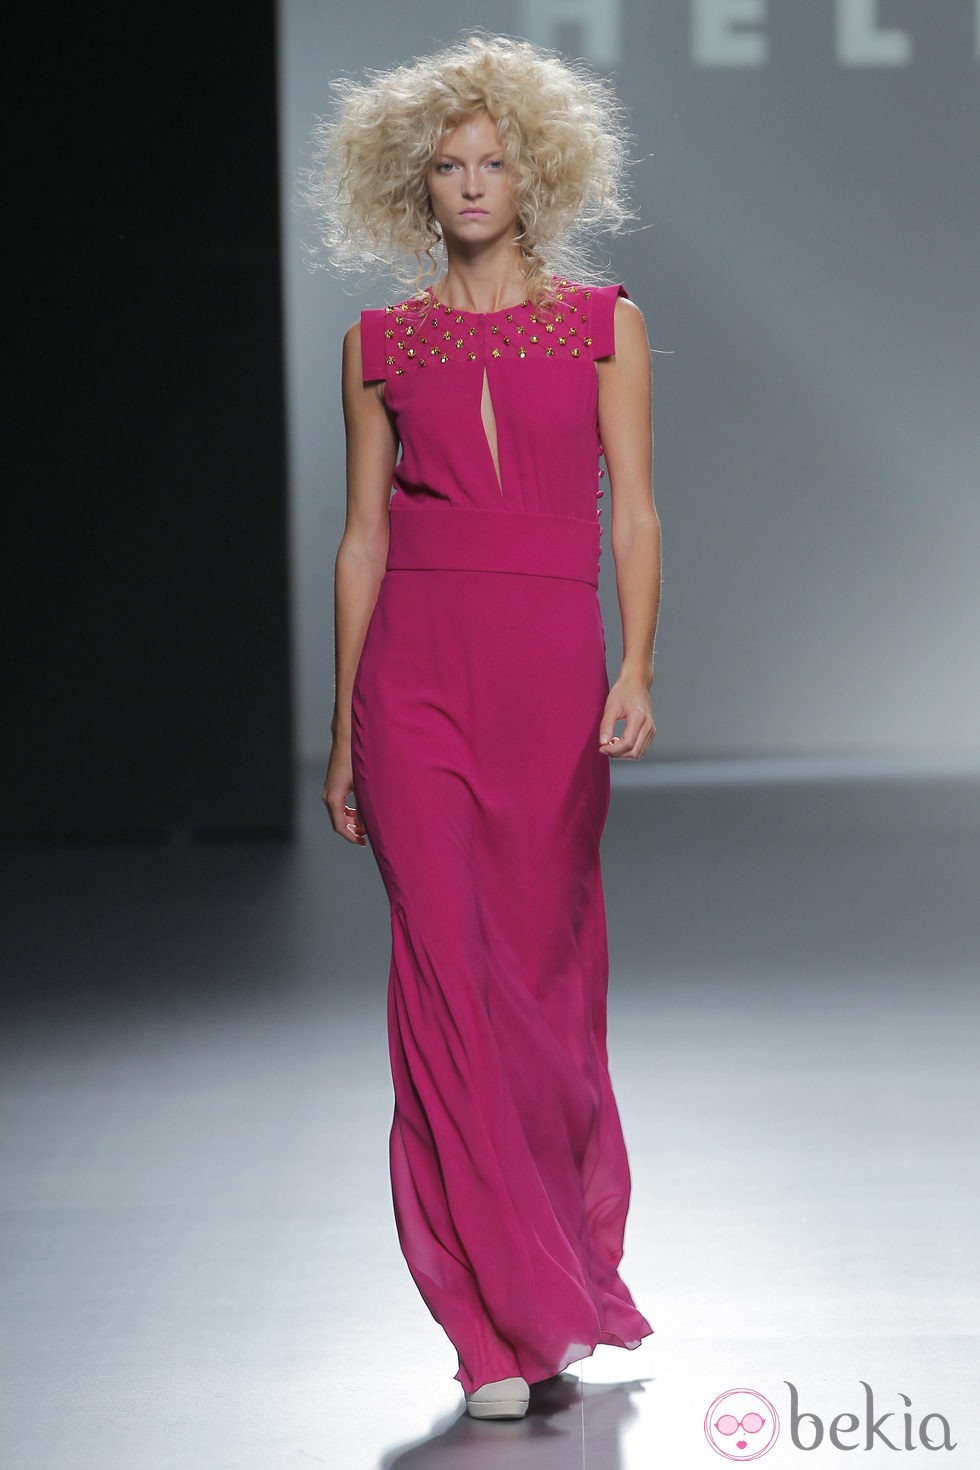 Vestido rosa de Teresa Helbig, colección primavera/verano 2013